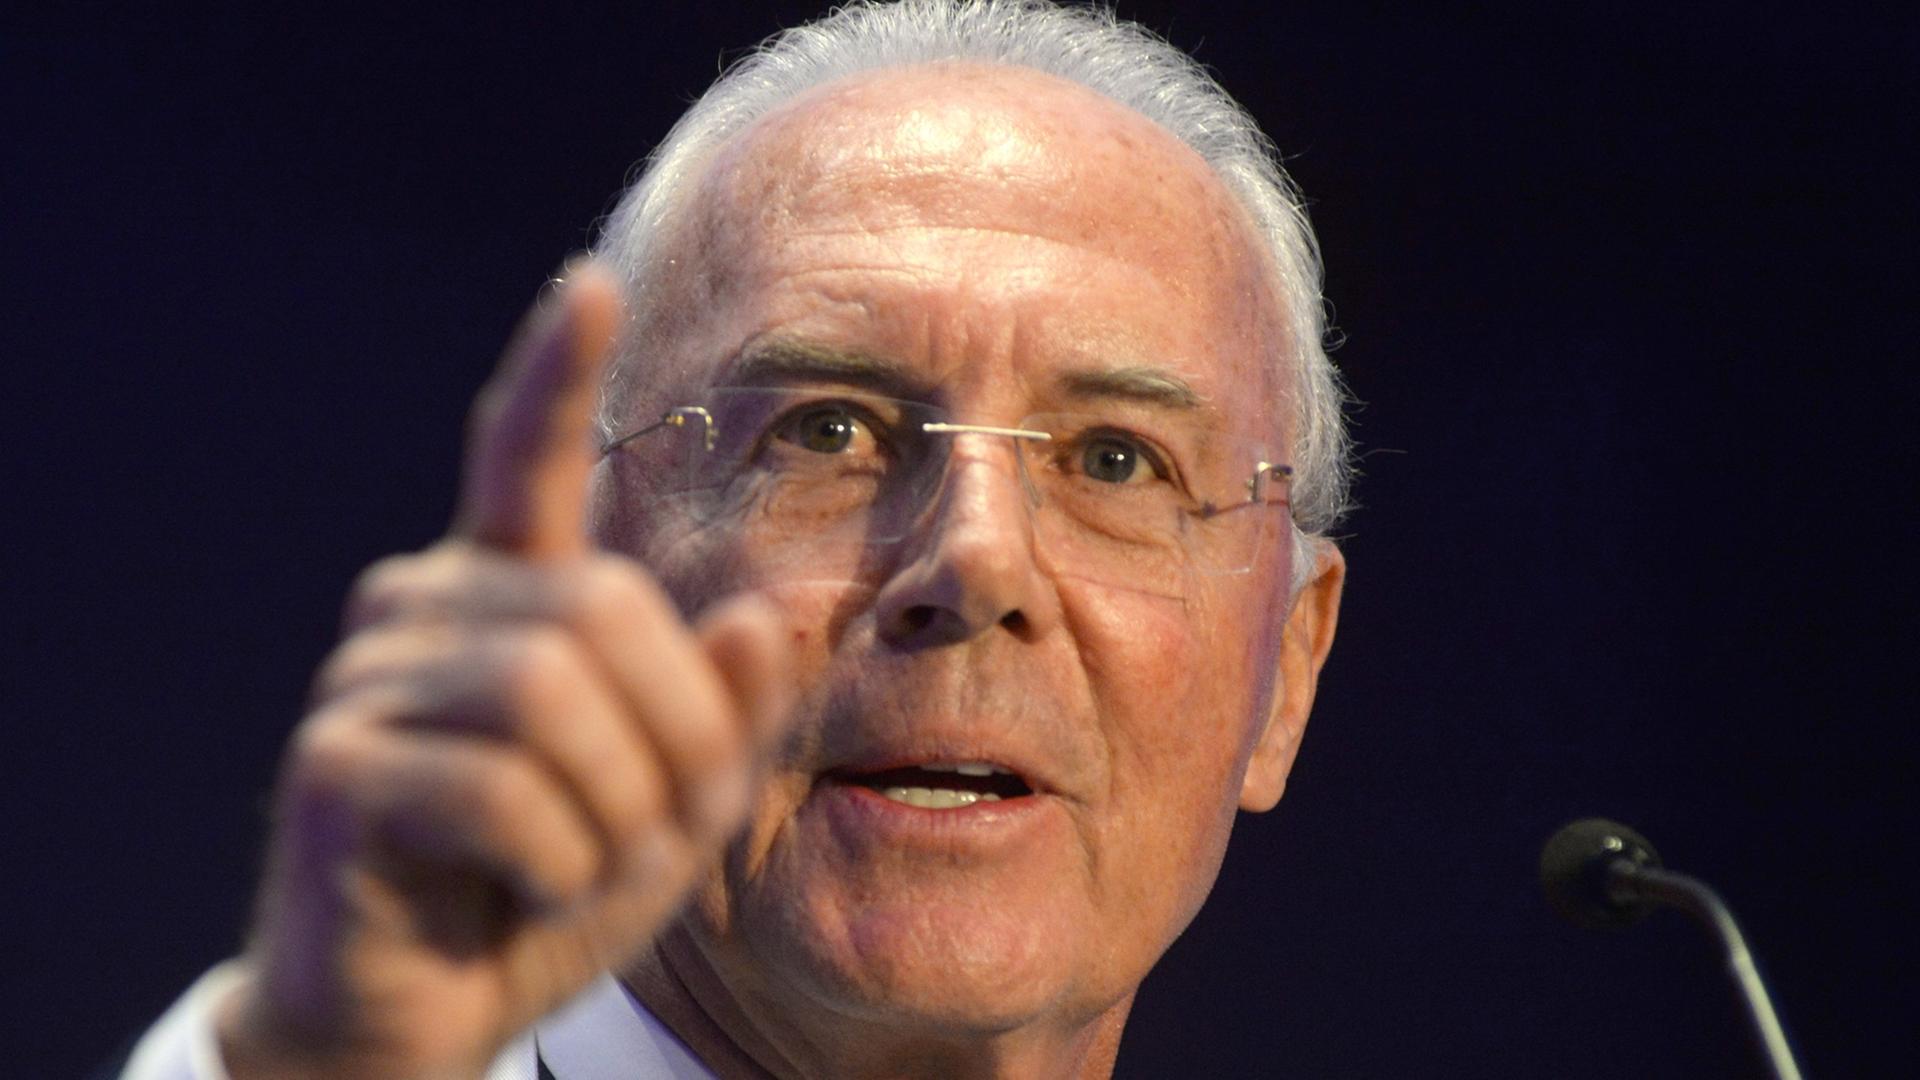 Franz Beckenbauer hebt während einer Rede die rechte Hand und zeigt mit dem Finger auf etwas.